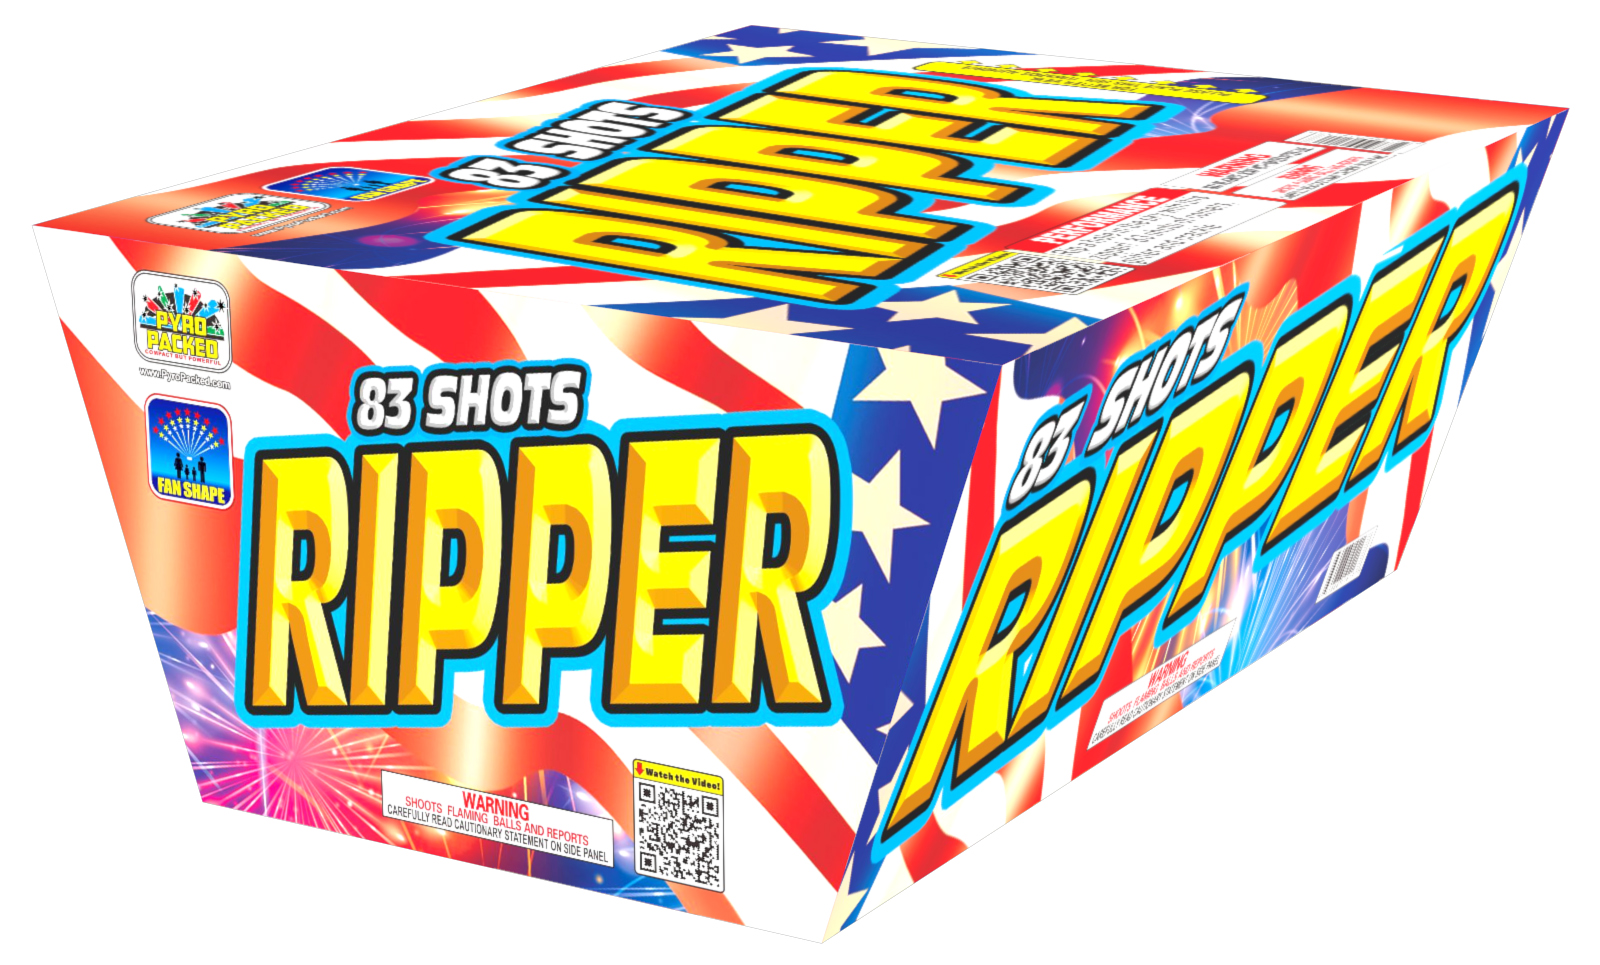 Ripper Zipper